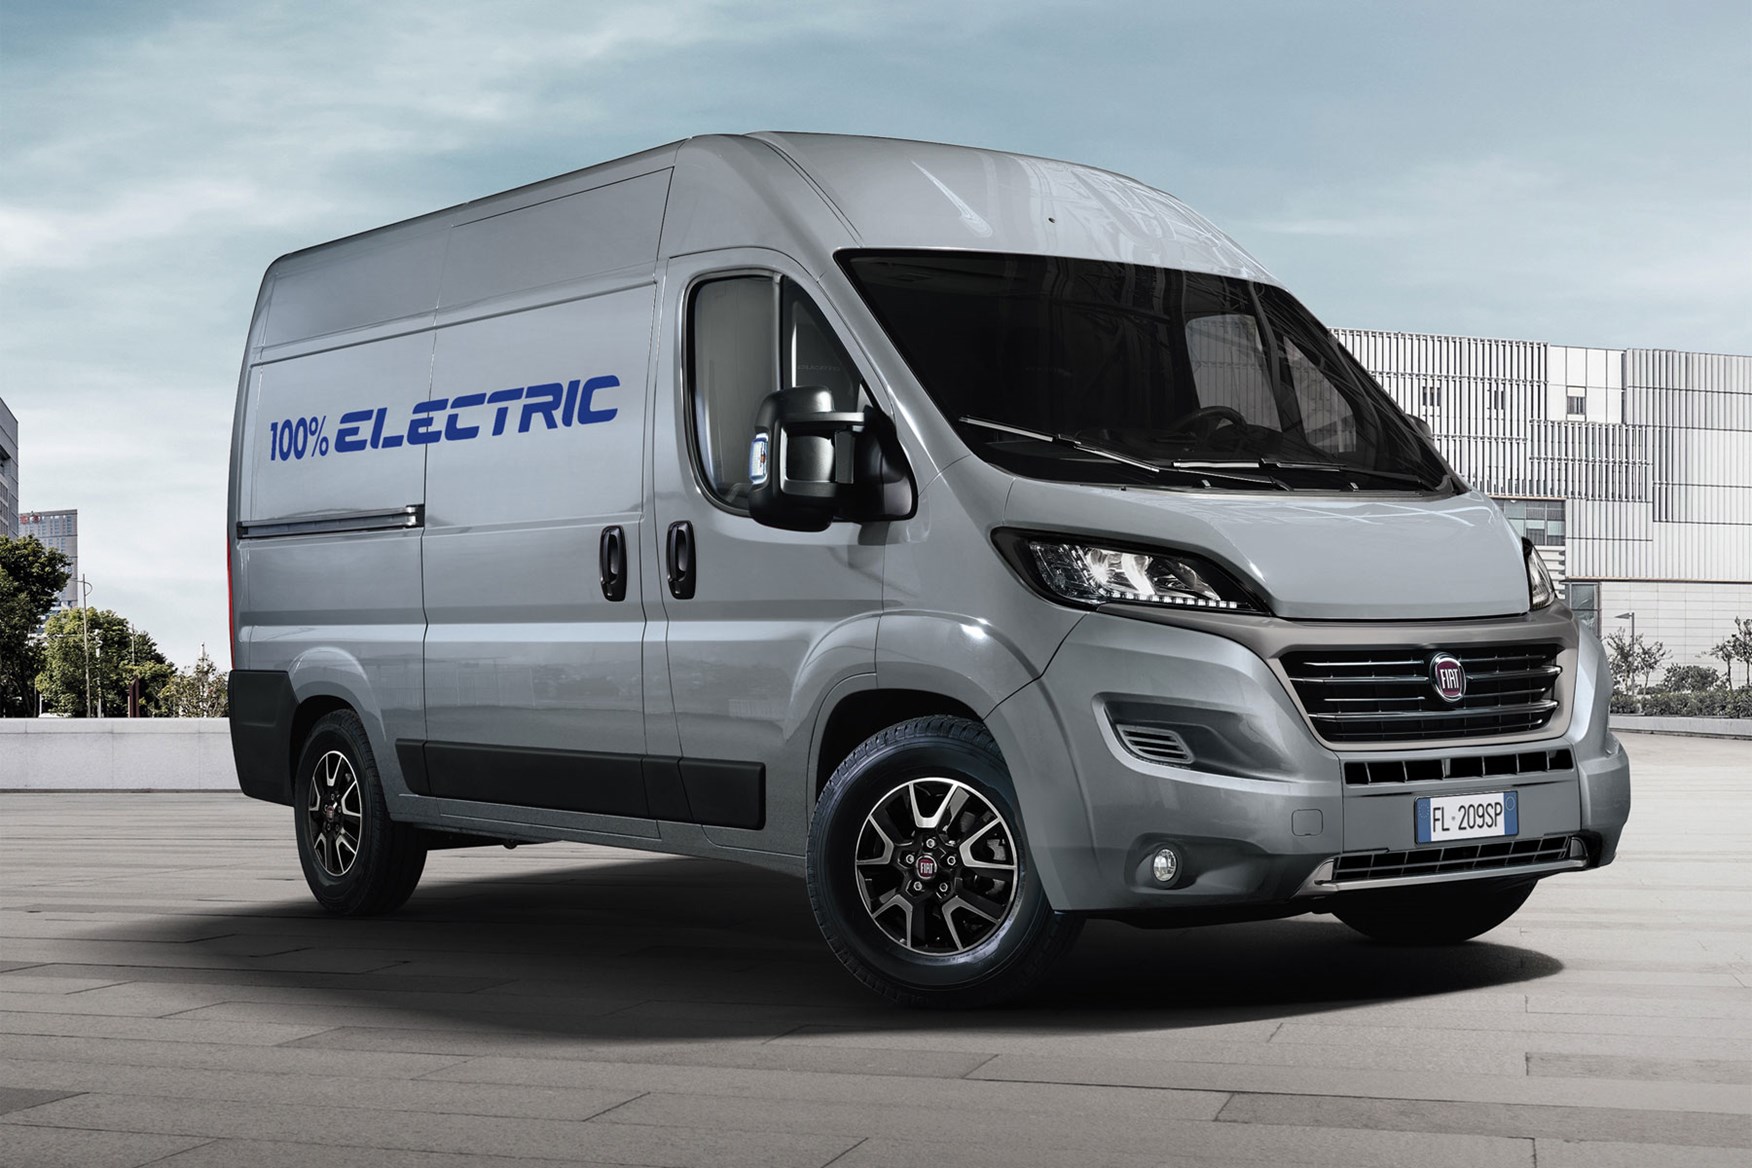 electric van uk for sale